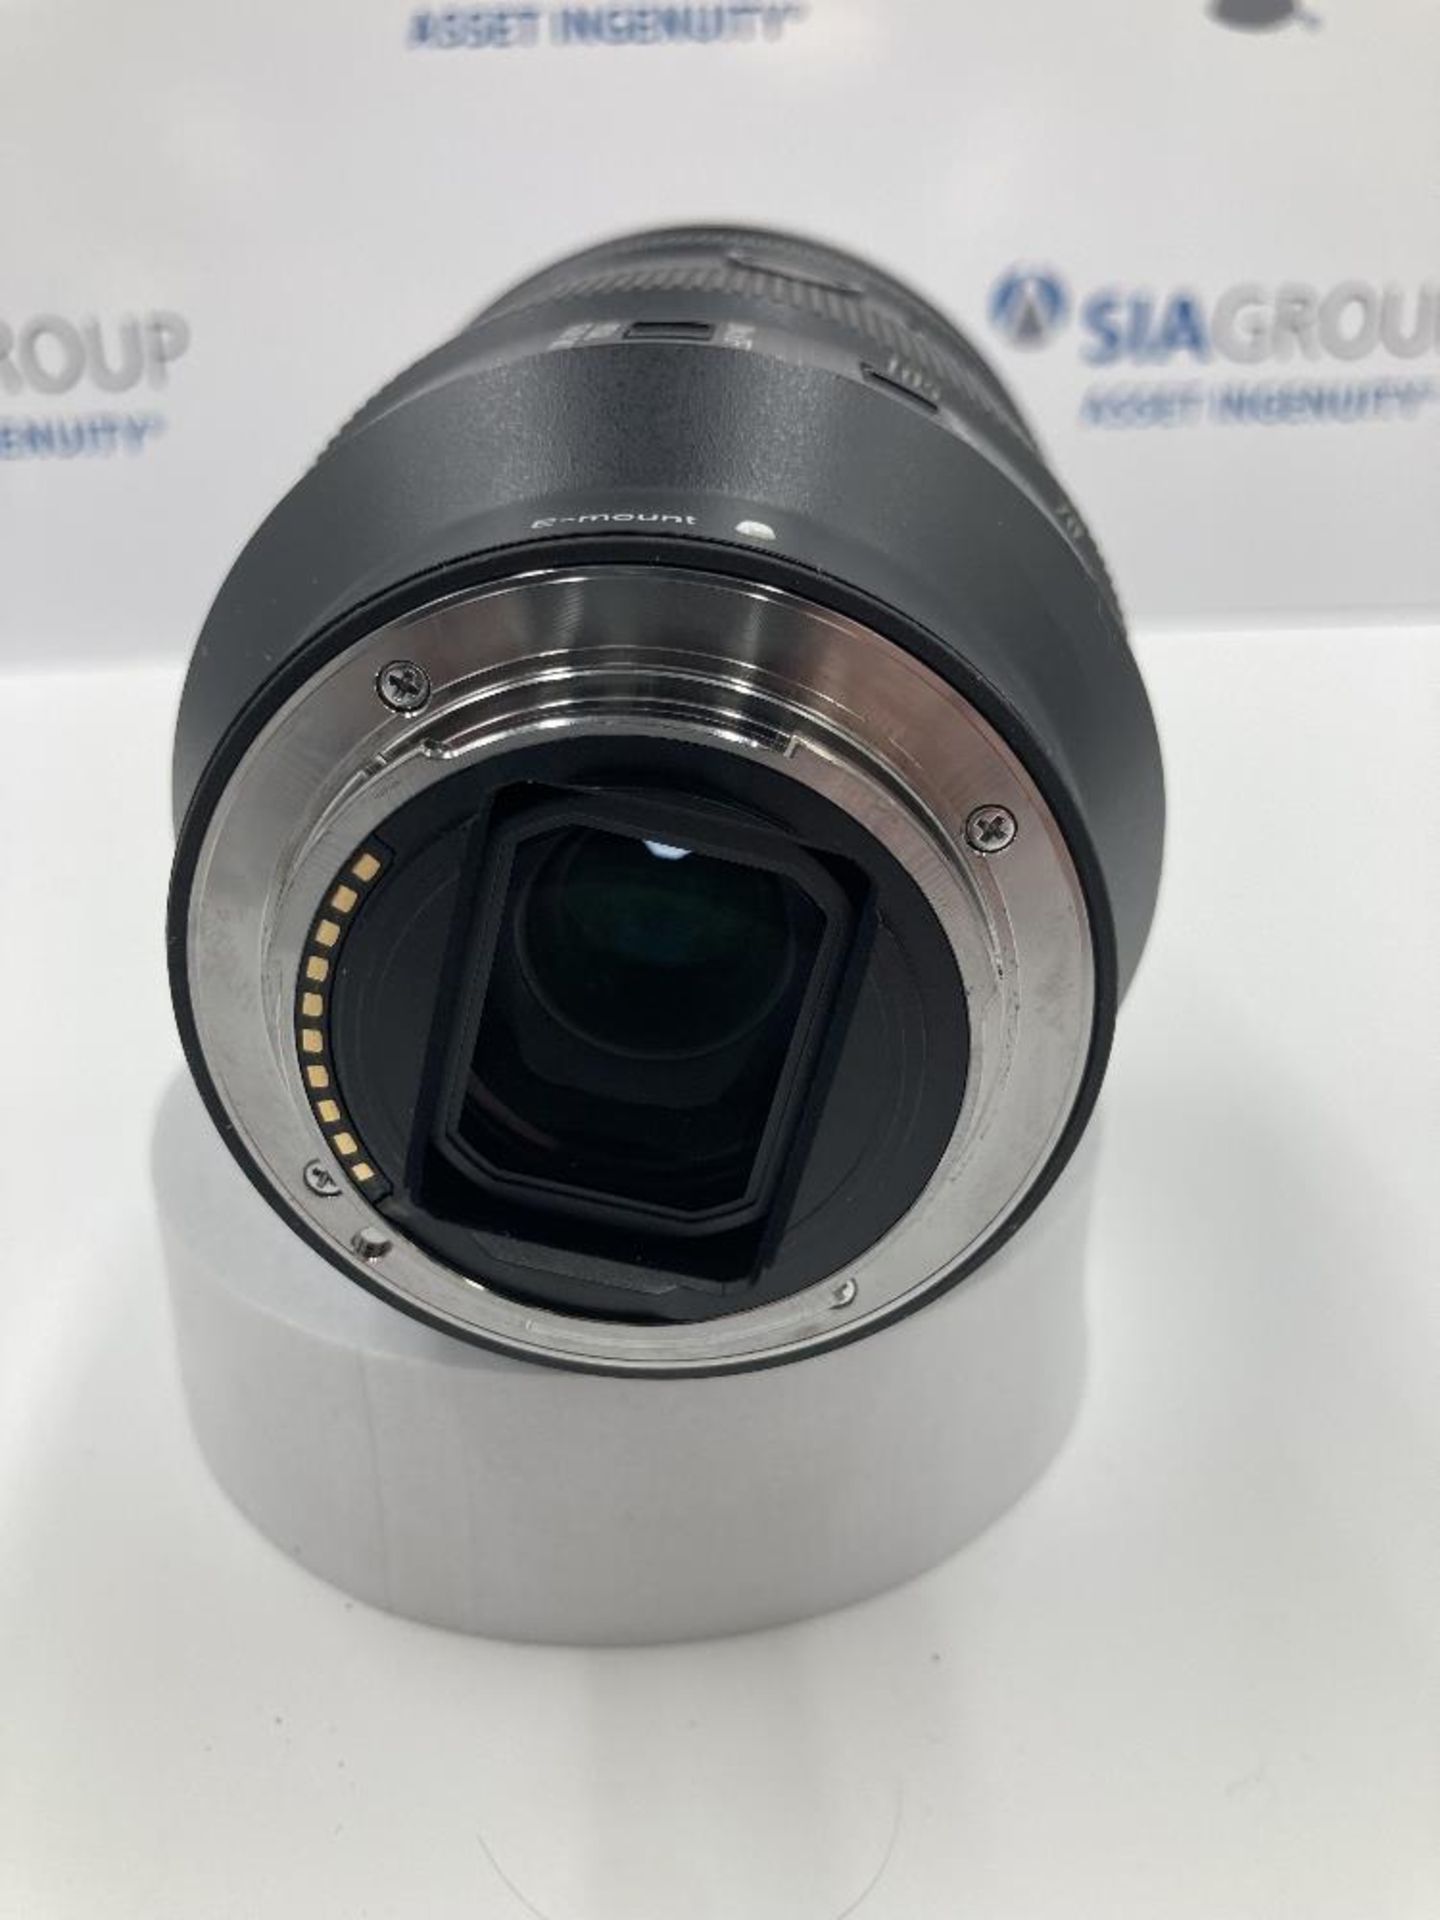 Sony E-Mount 24-105mm FE 4/24-105 G OSS Zoom Lens & Sony ALC-SH152 Lens Hood - Image 5 of 5